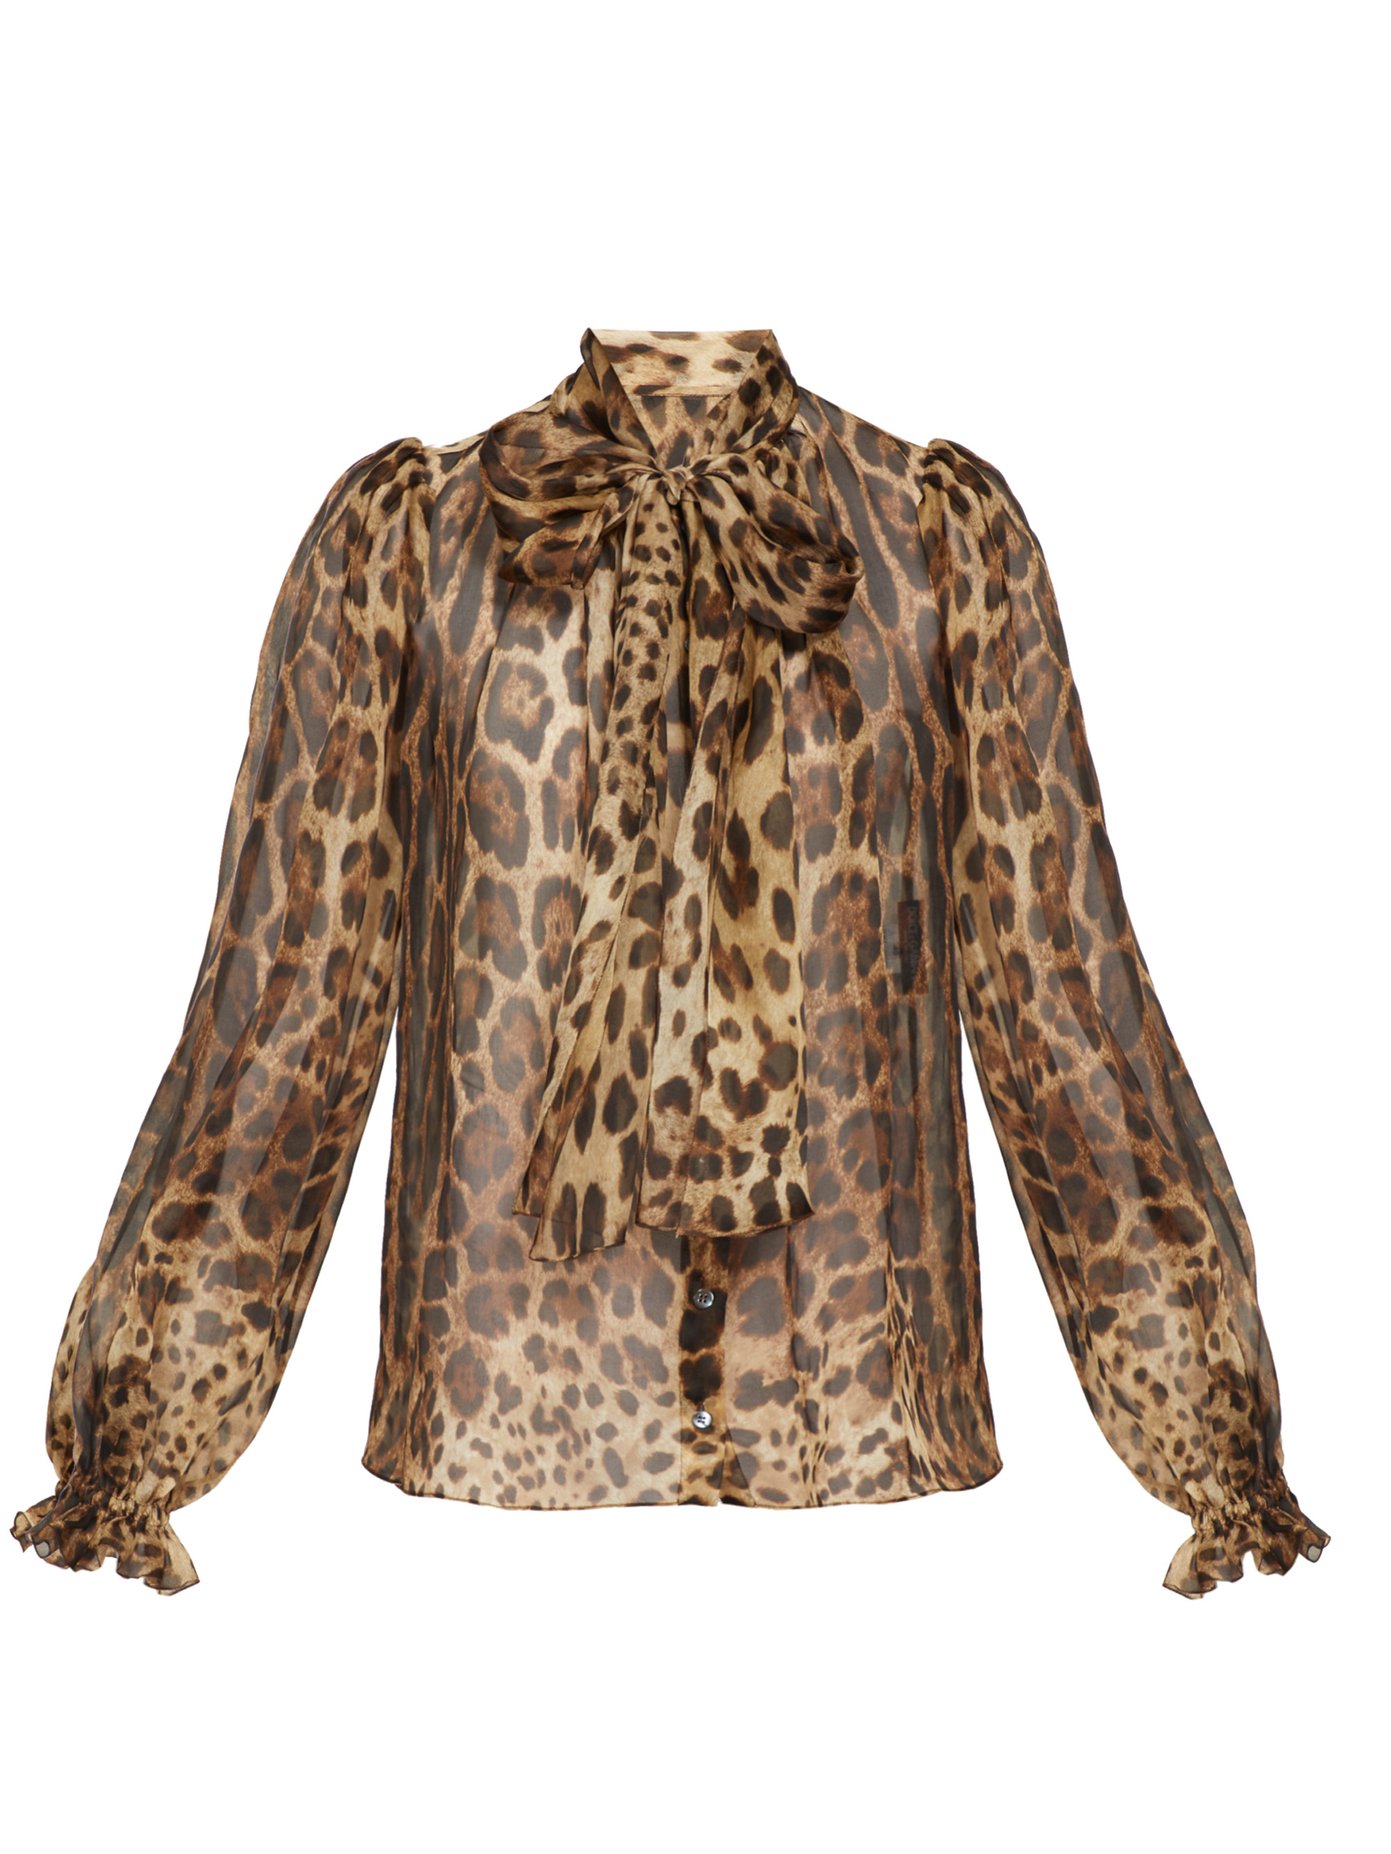 dolce and gabbana leopard shirt